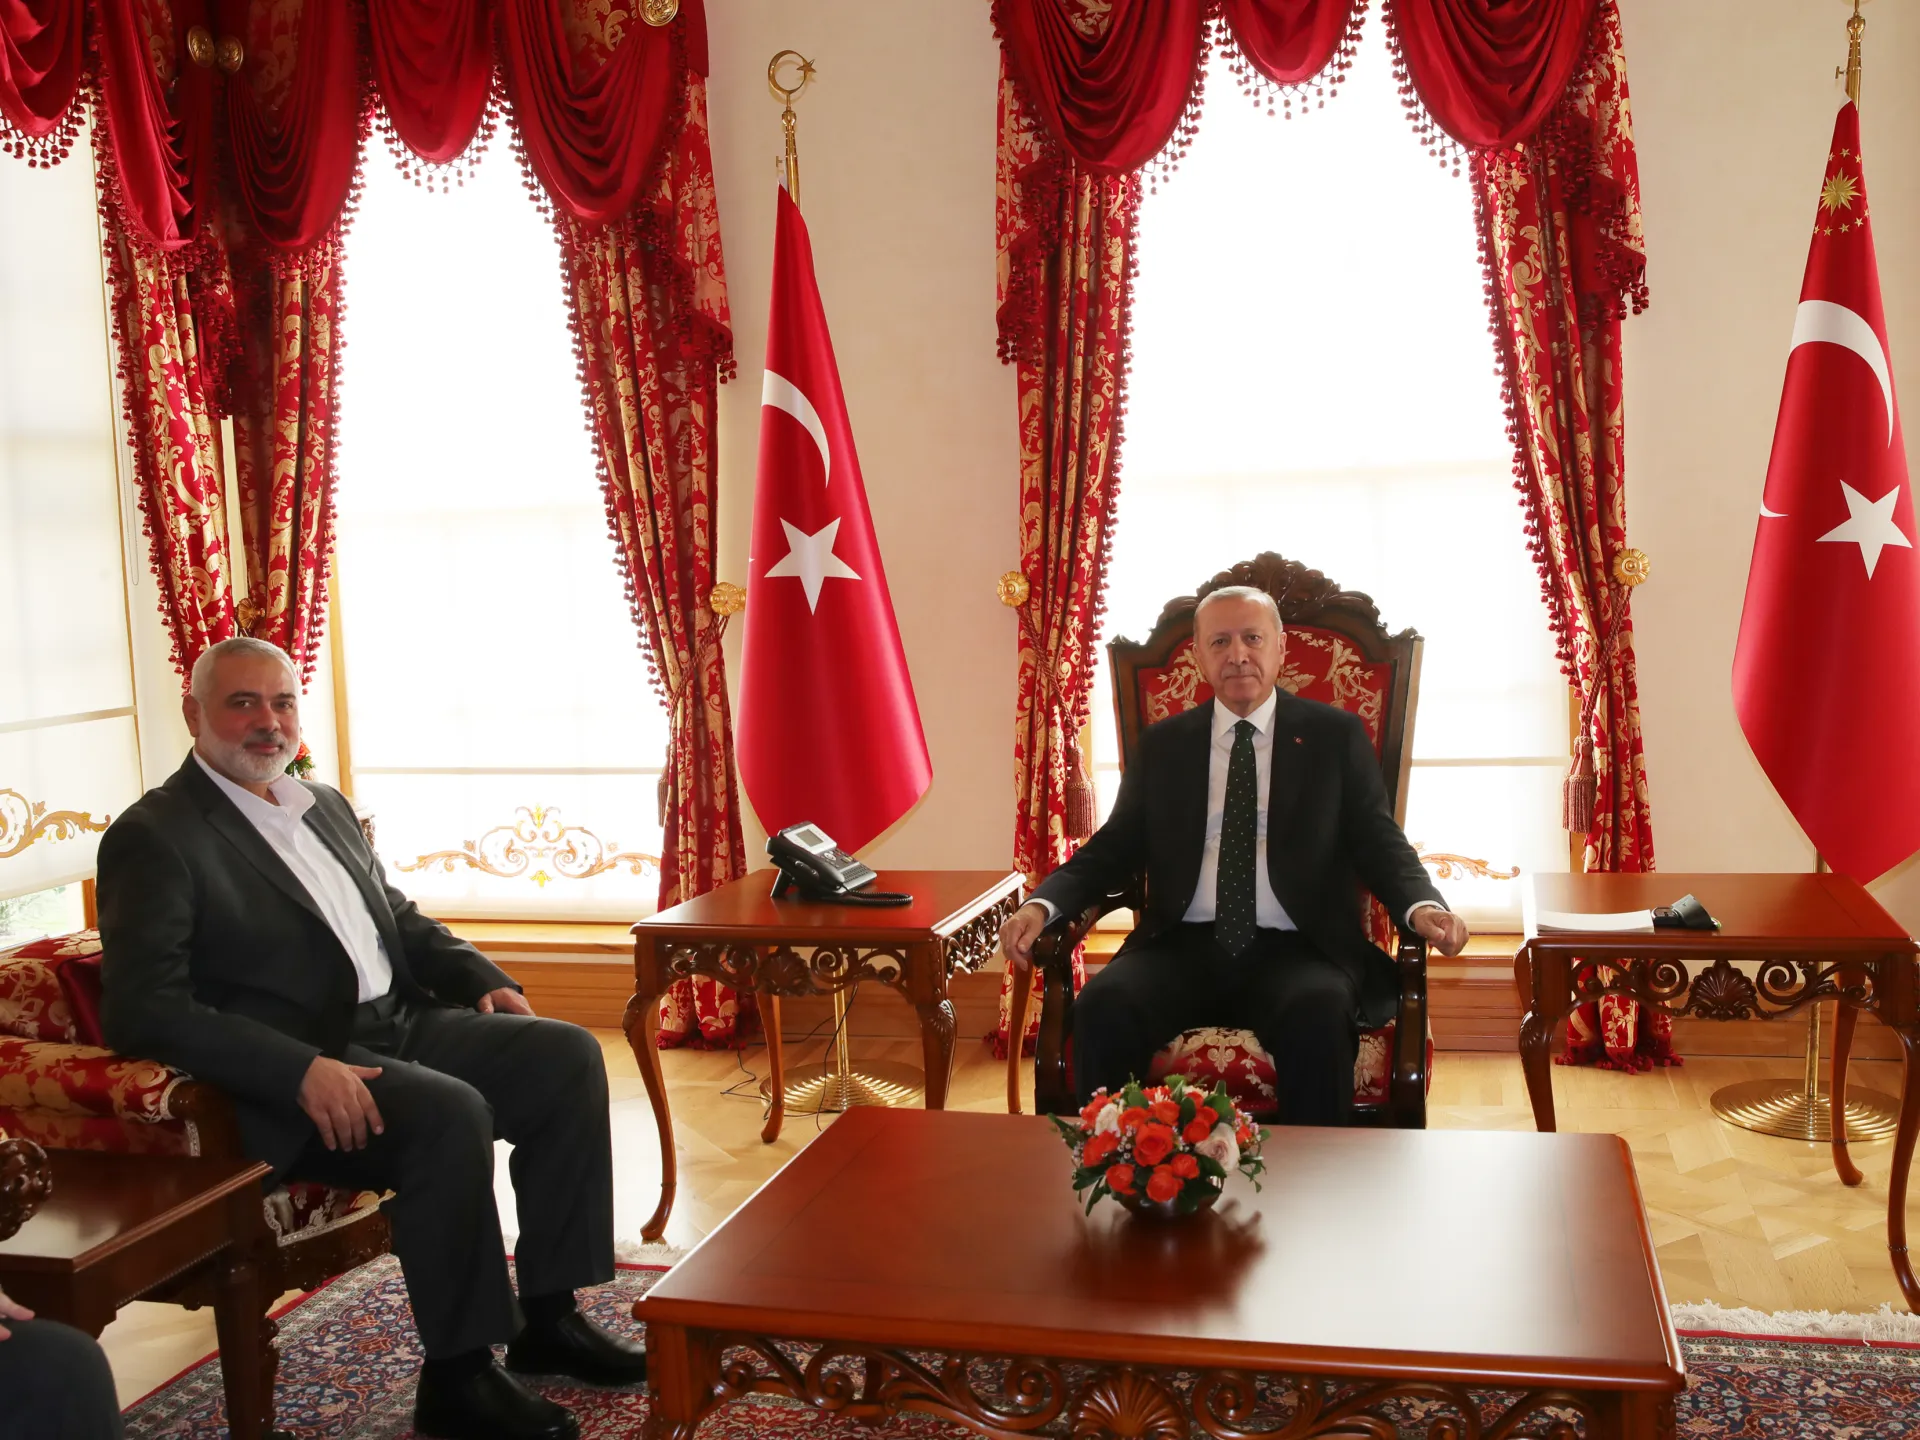 حقيقة طلبت تركيا من إسماعيل هنية رئيس المكتسب السياسي لحركة حماس مغادرة أراضيها بعد عملية طوفان الأقصى